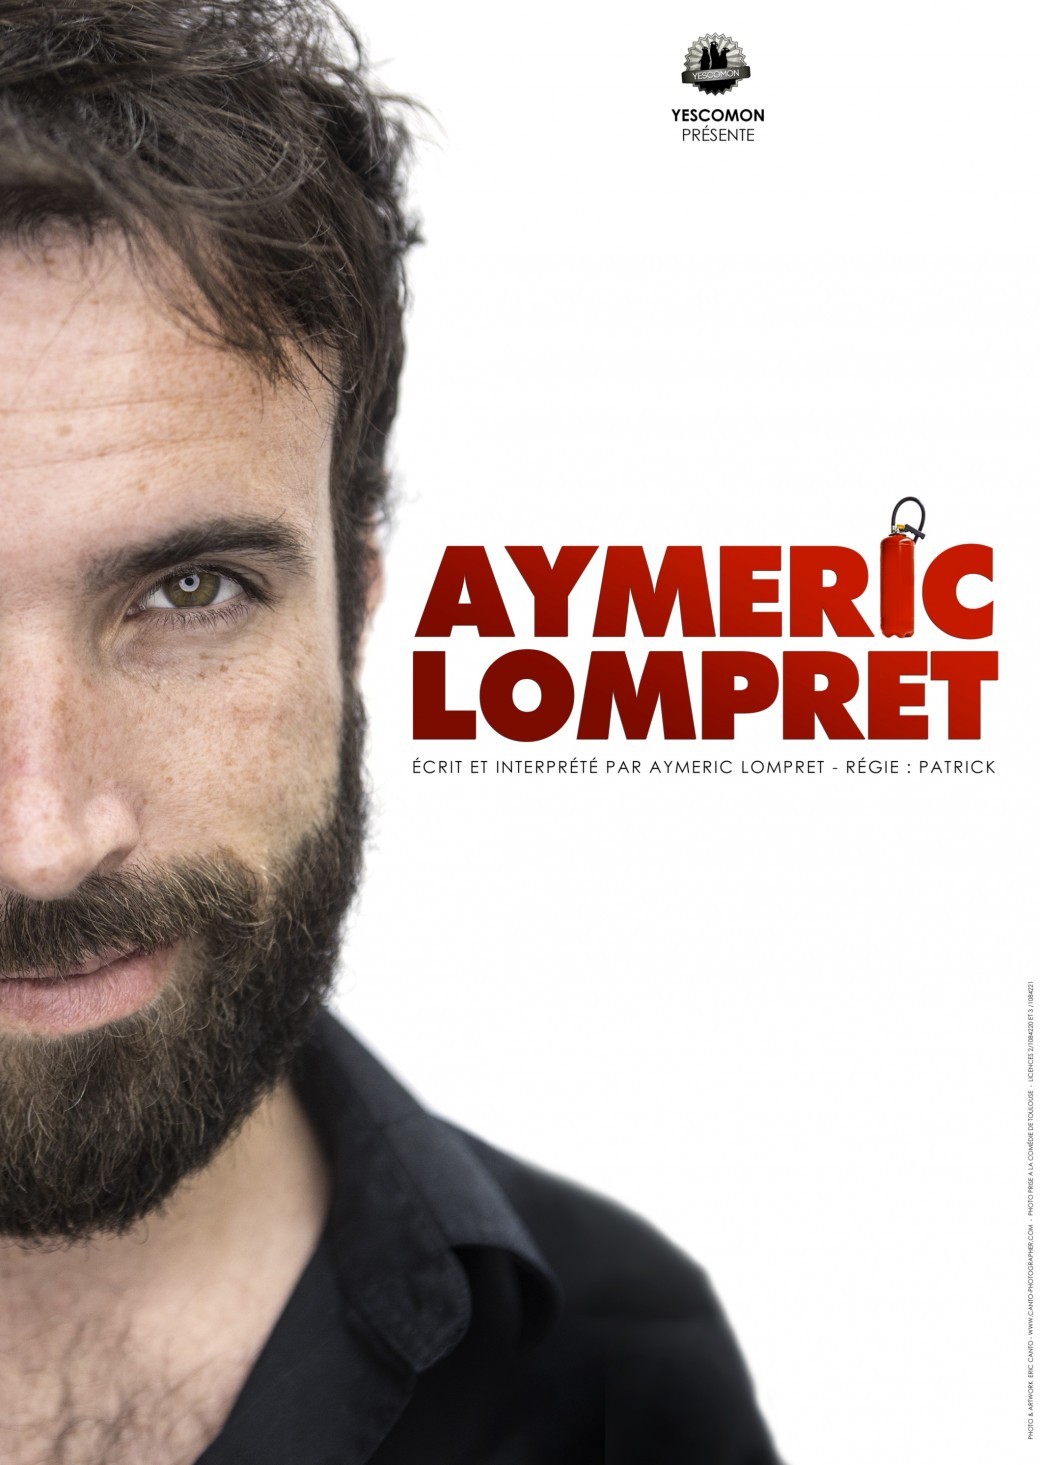 Aymeric Lompret dans son "Nouveau spectacle"